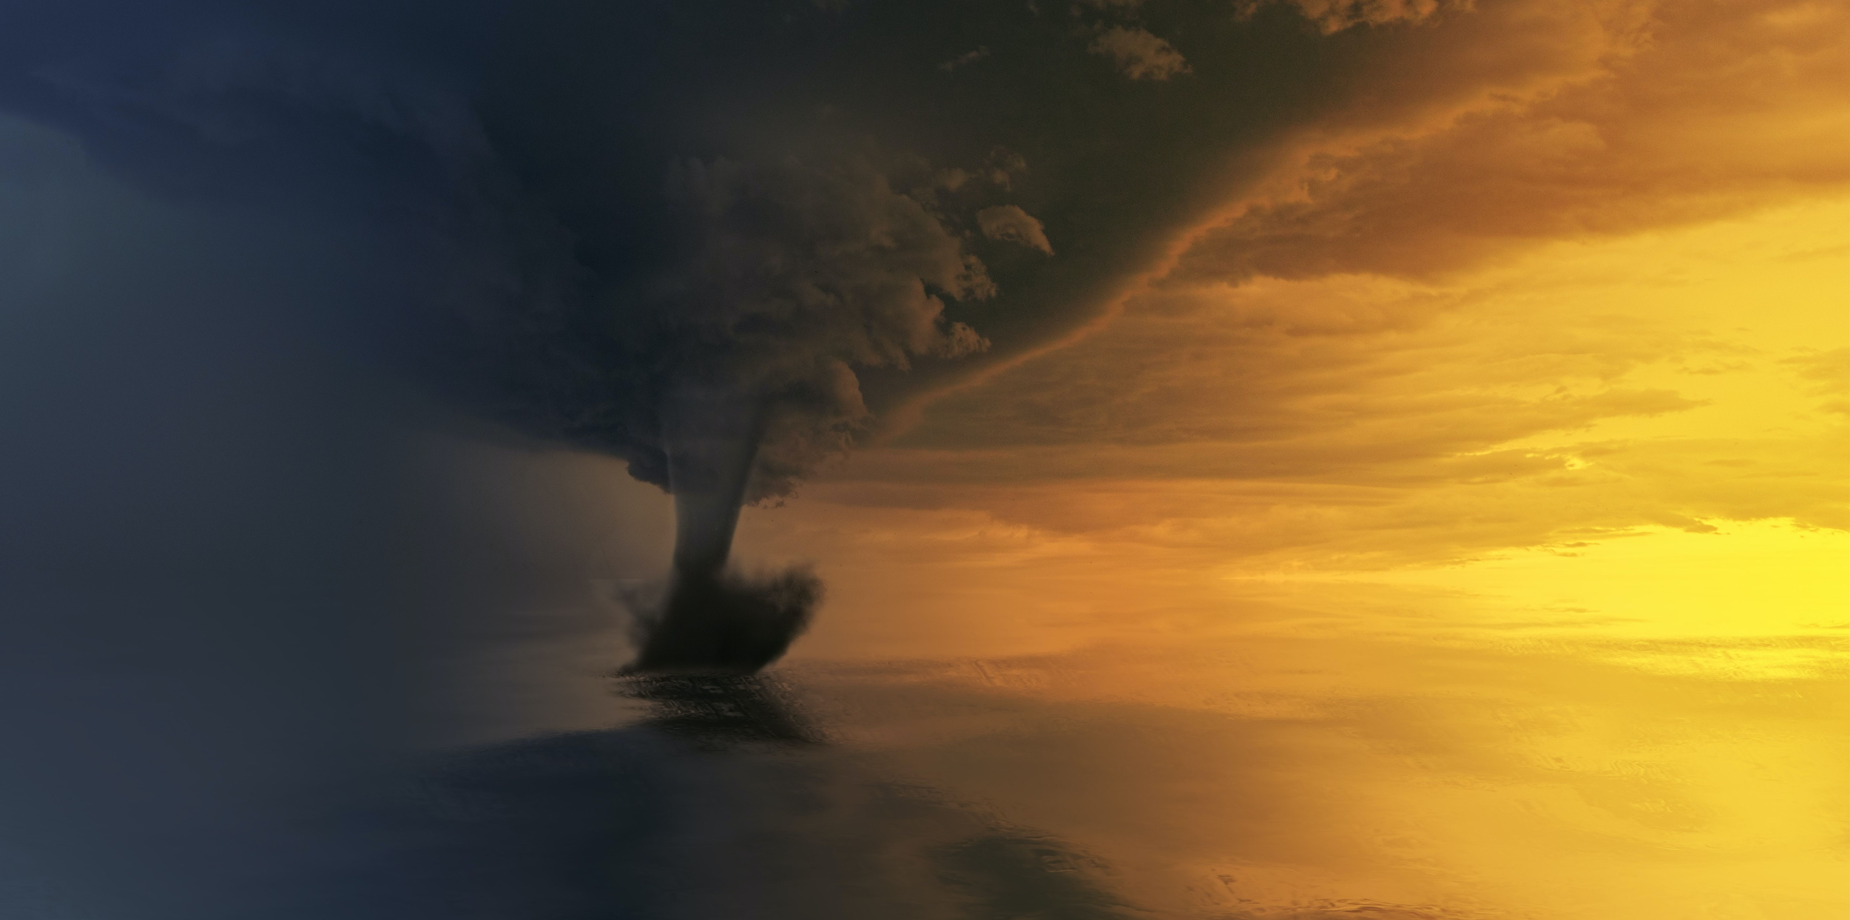 Disastri naturali e cambiamenti climatici: un legame inevitabile e pericoloso